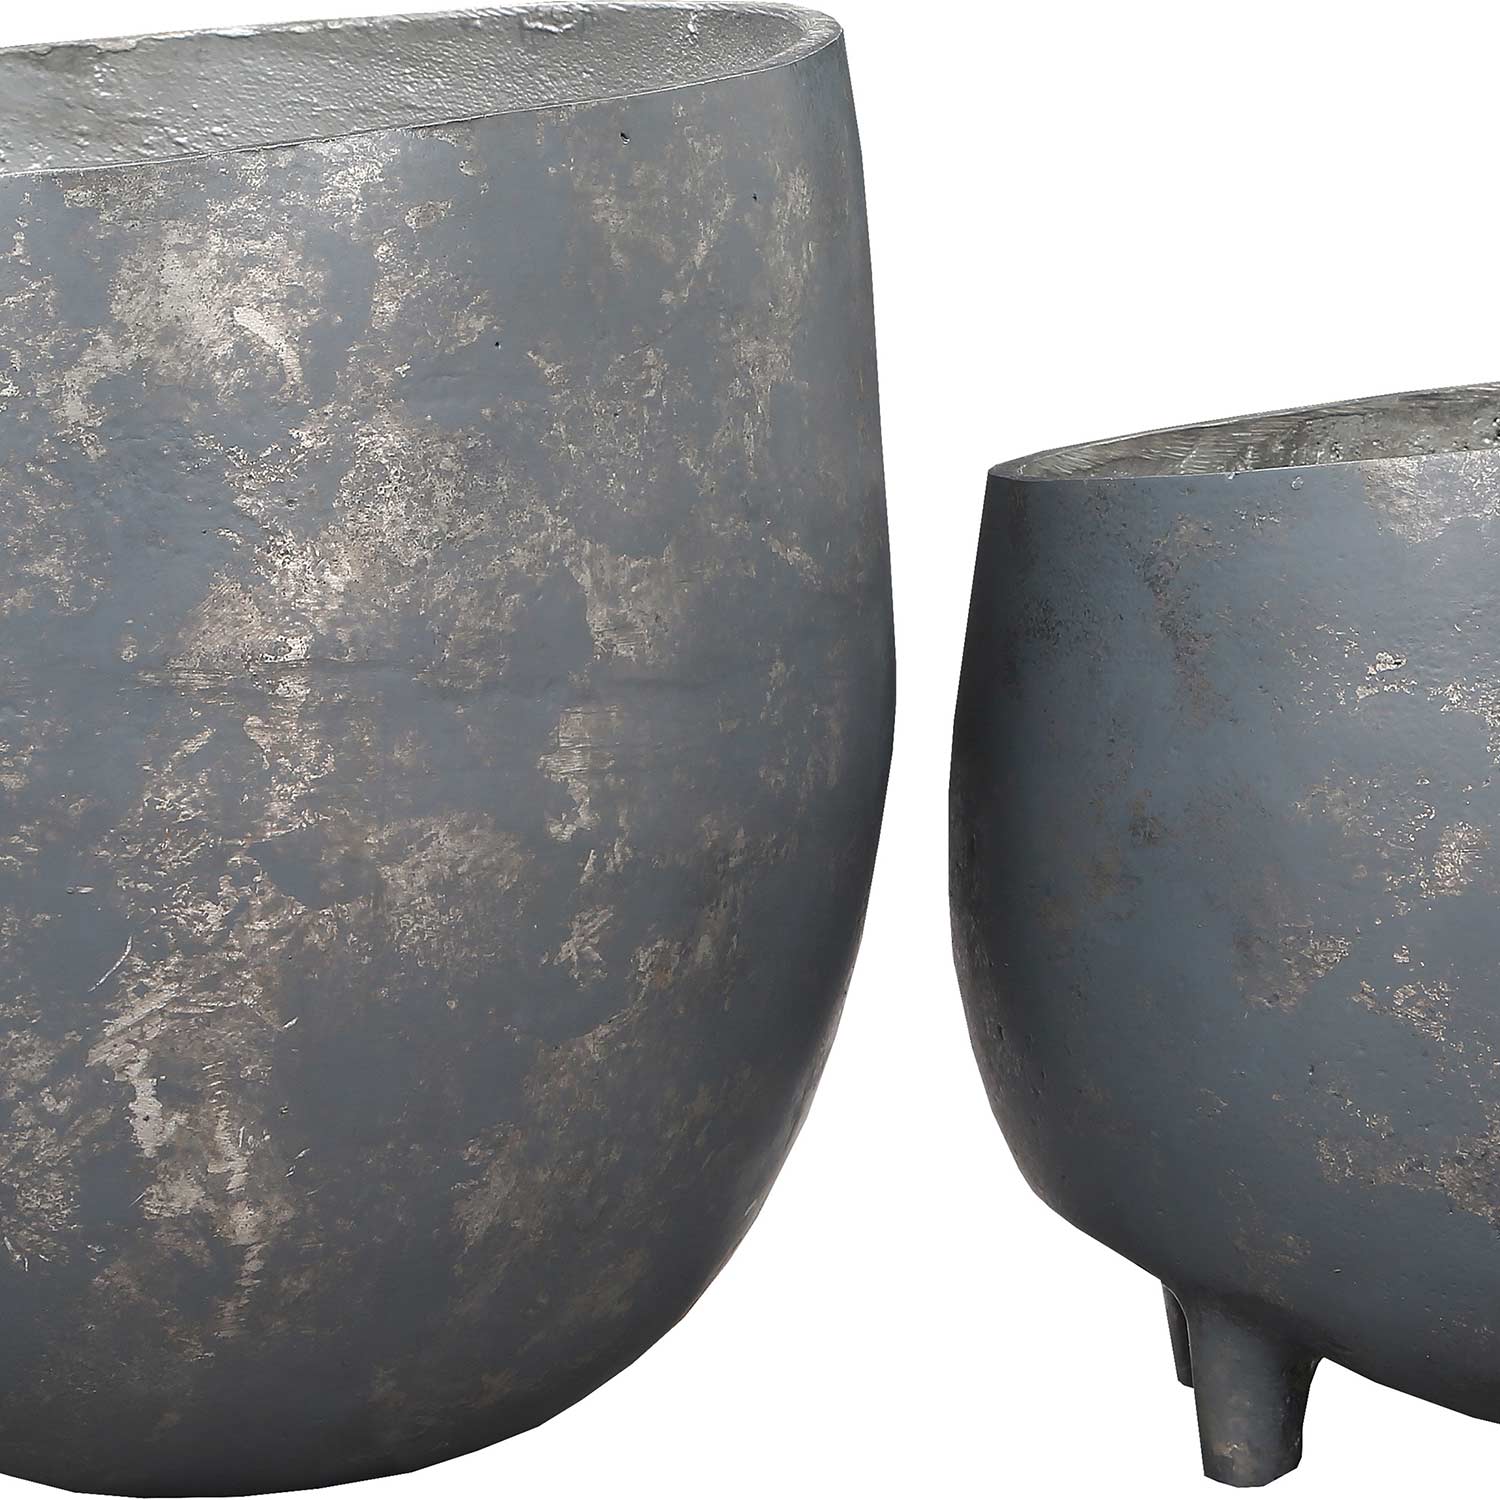 Ren-Wil Declan Outdoor Vase - Distressed Cement